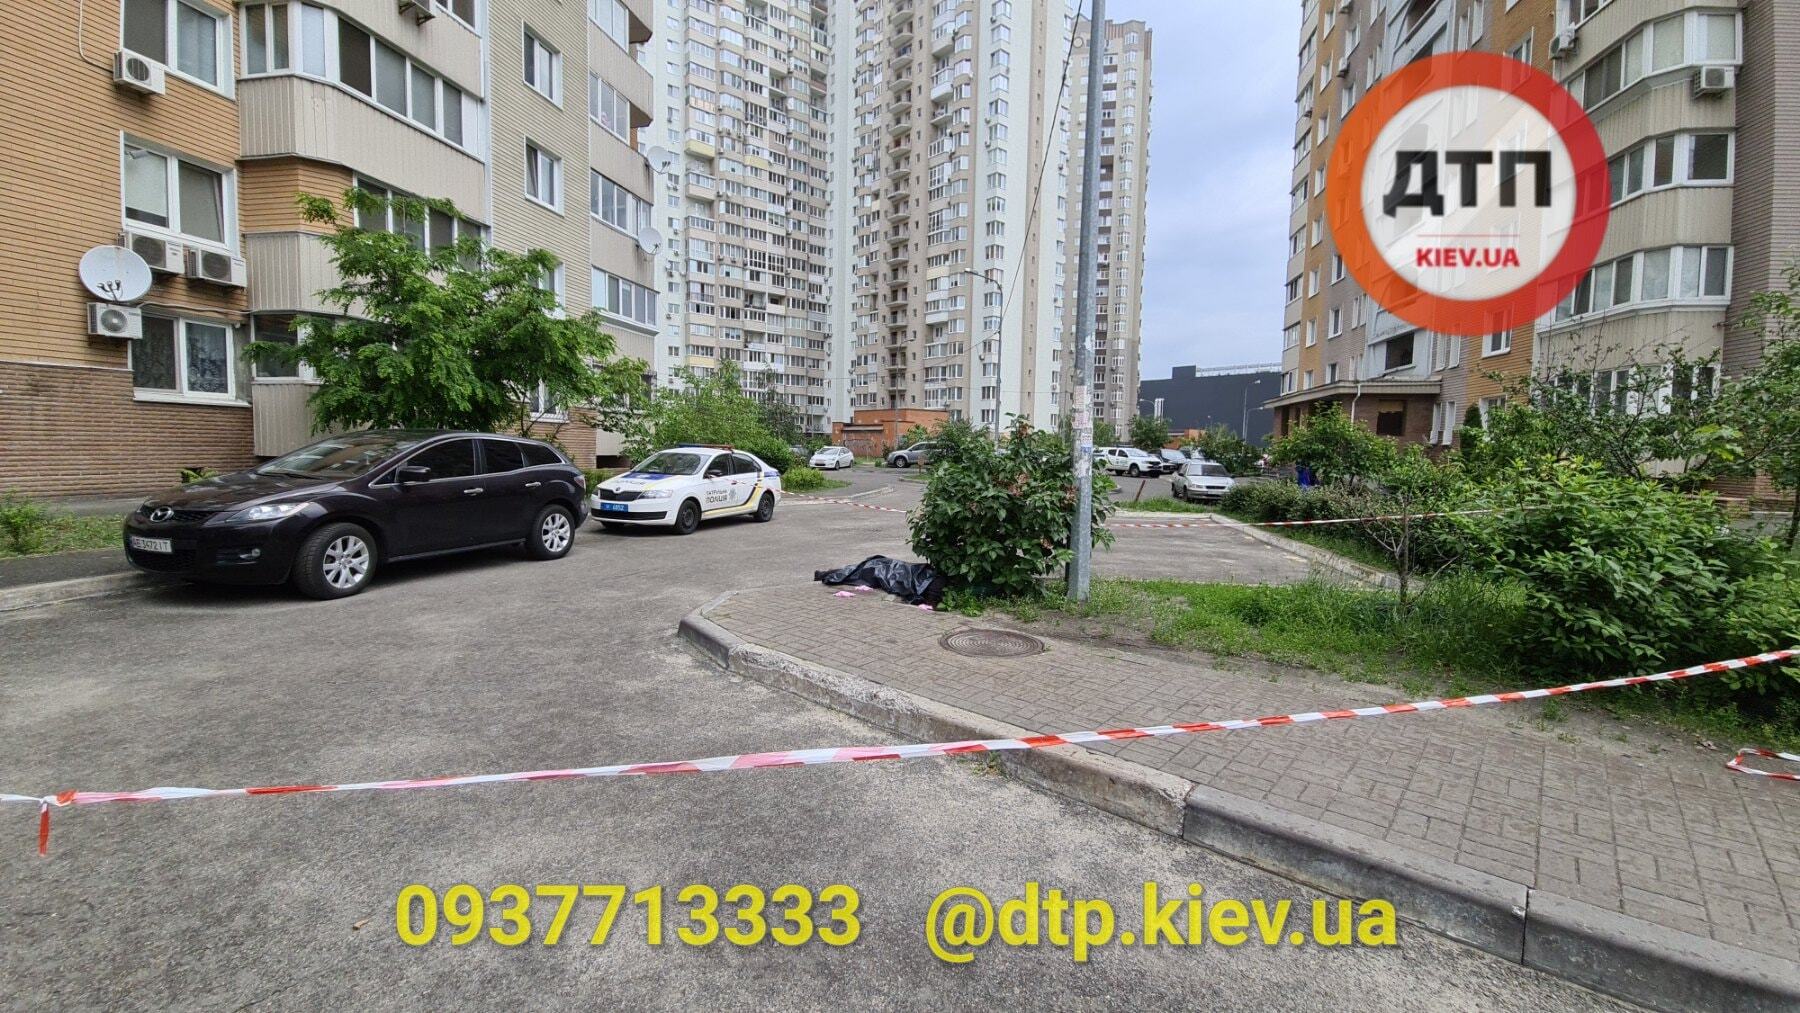 В Киеве парень разбился, упав с 21 этажа